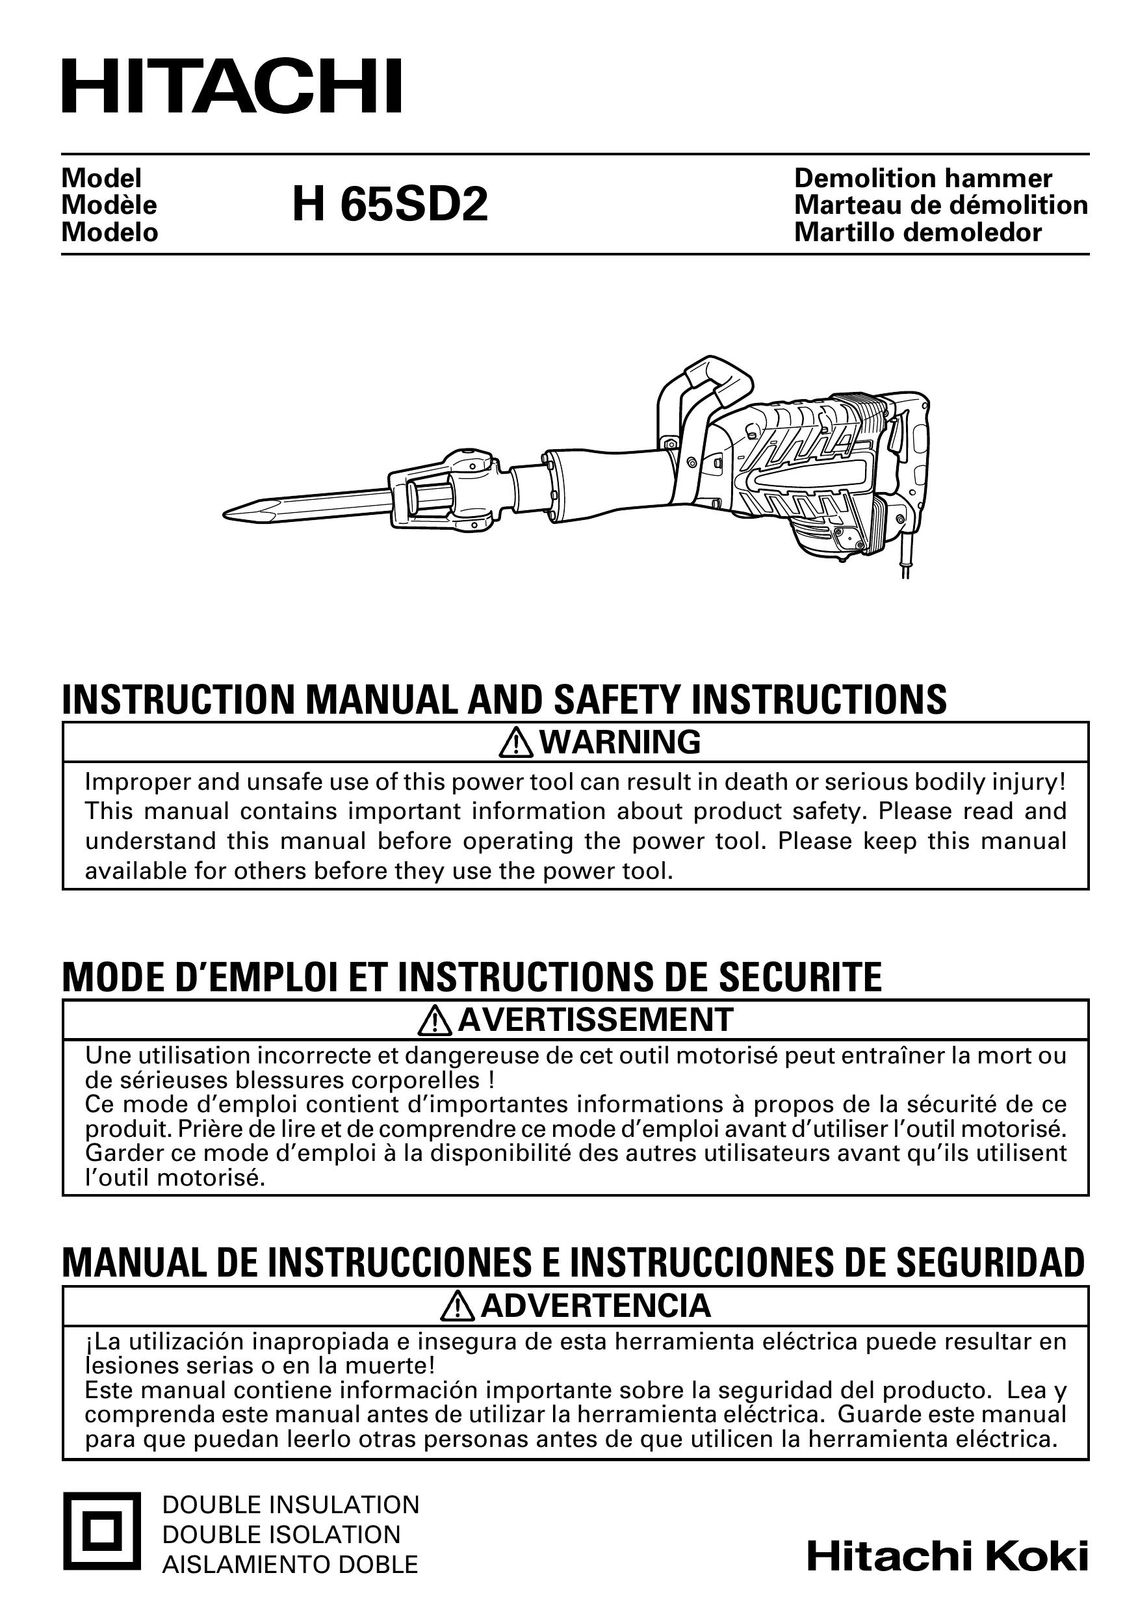 Hitachi Koki USA H 65SD2 Power Hammer User Manual